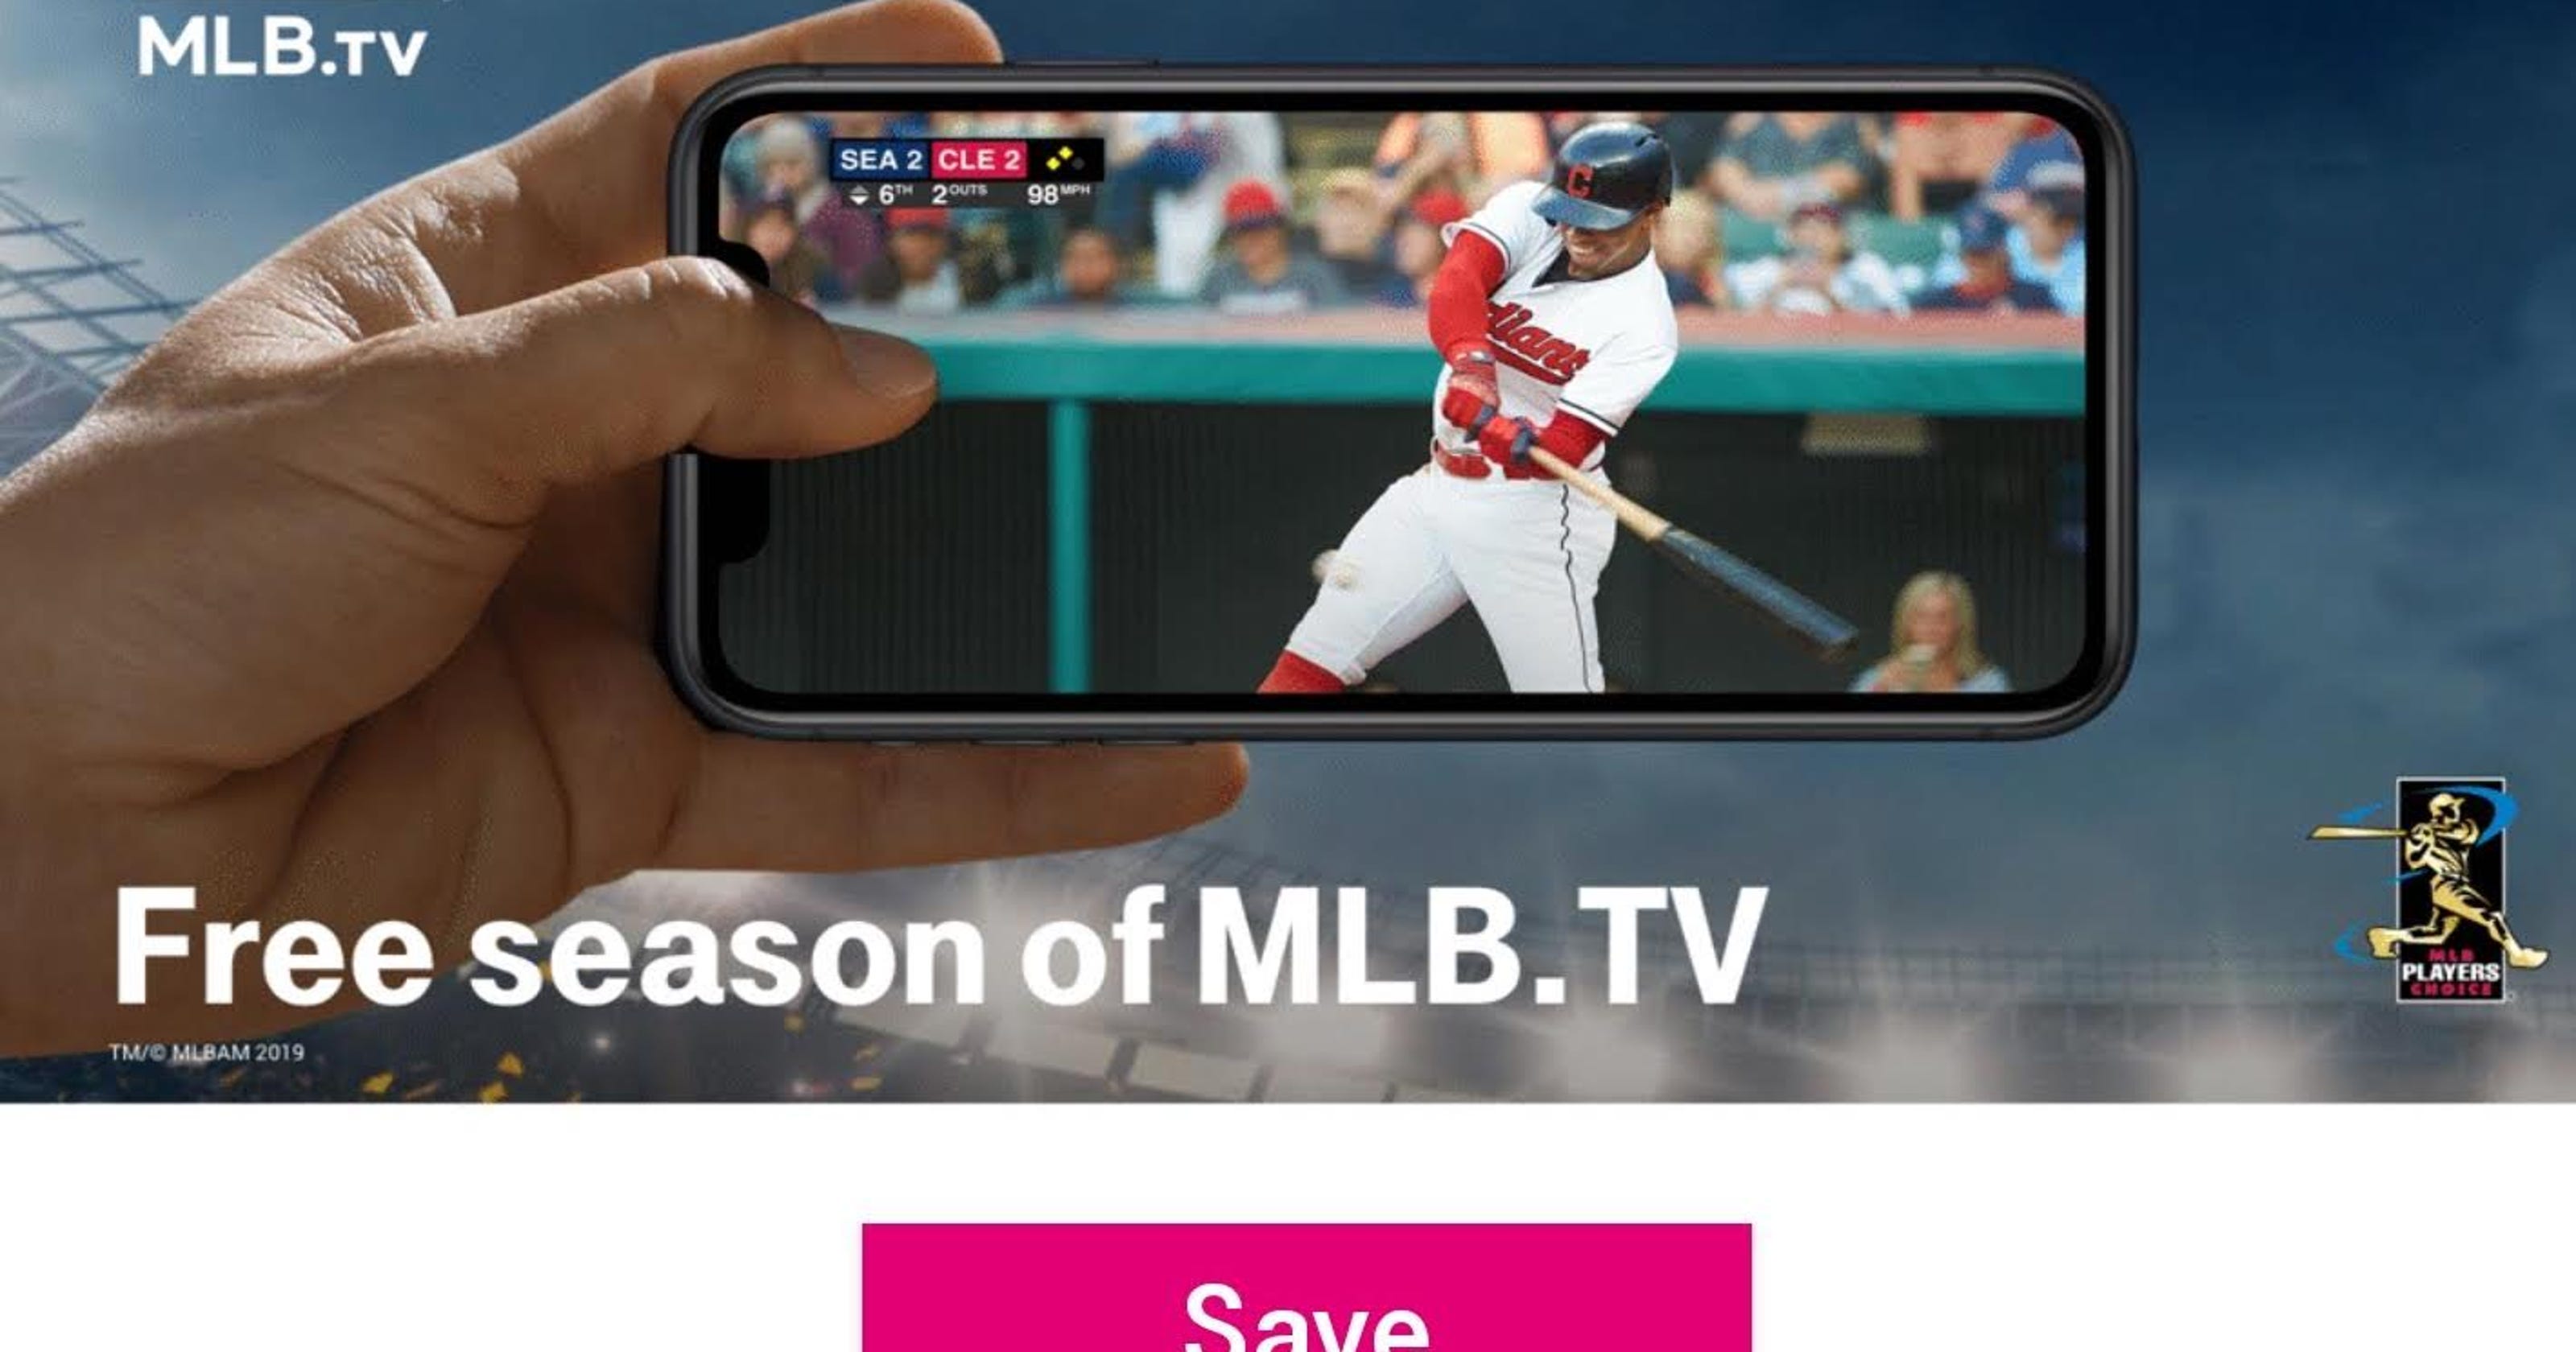 TMobile brings back free MLB.TV offer just in time for baseball